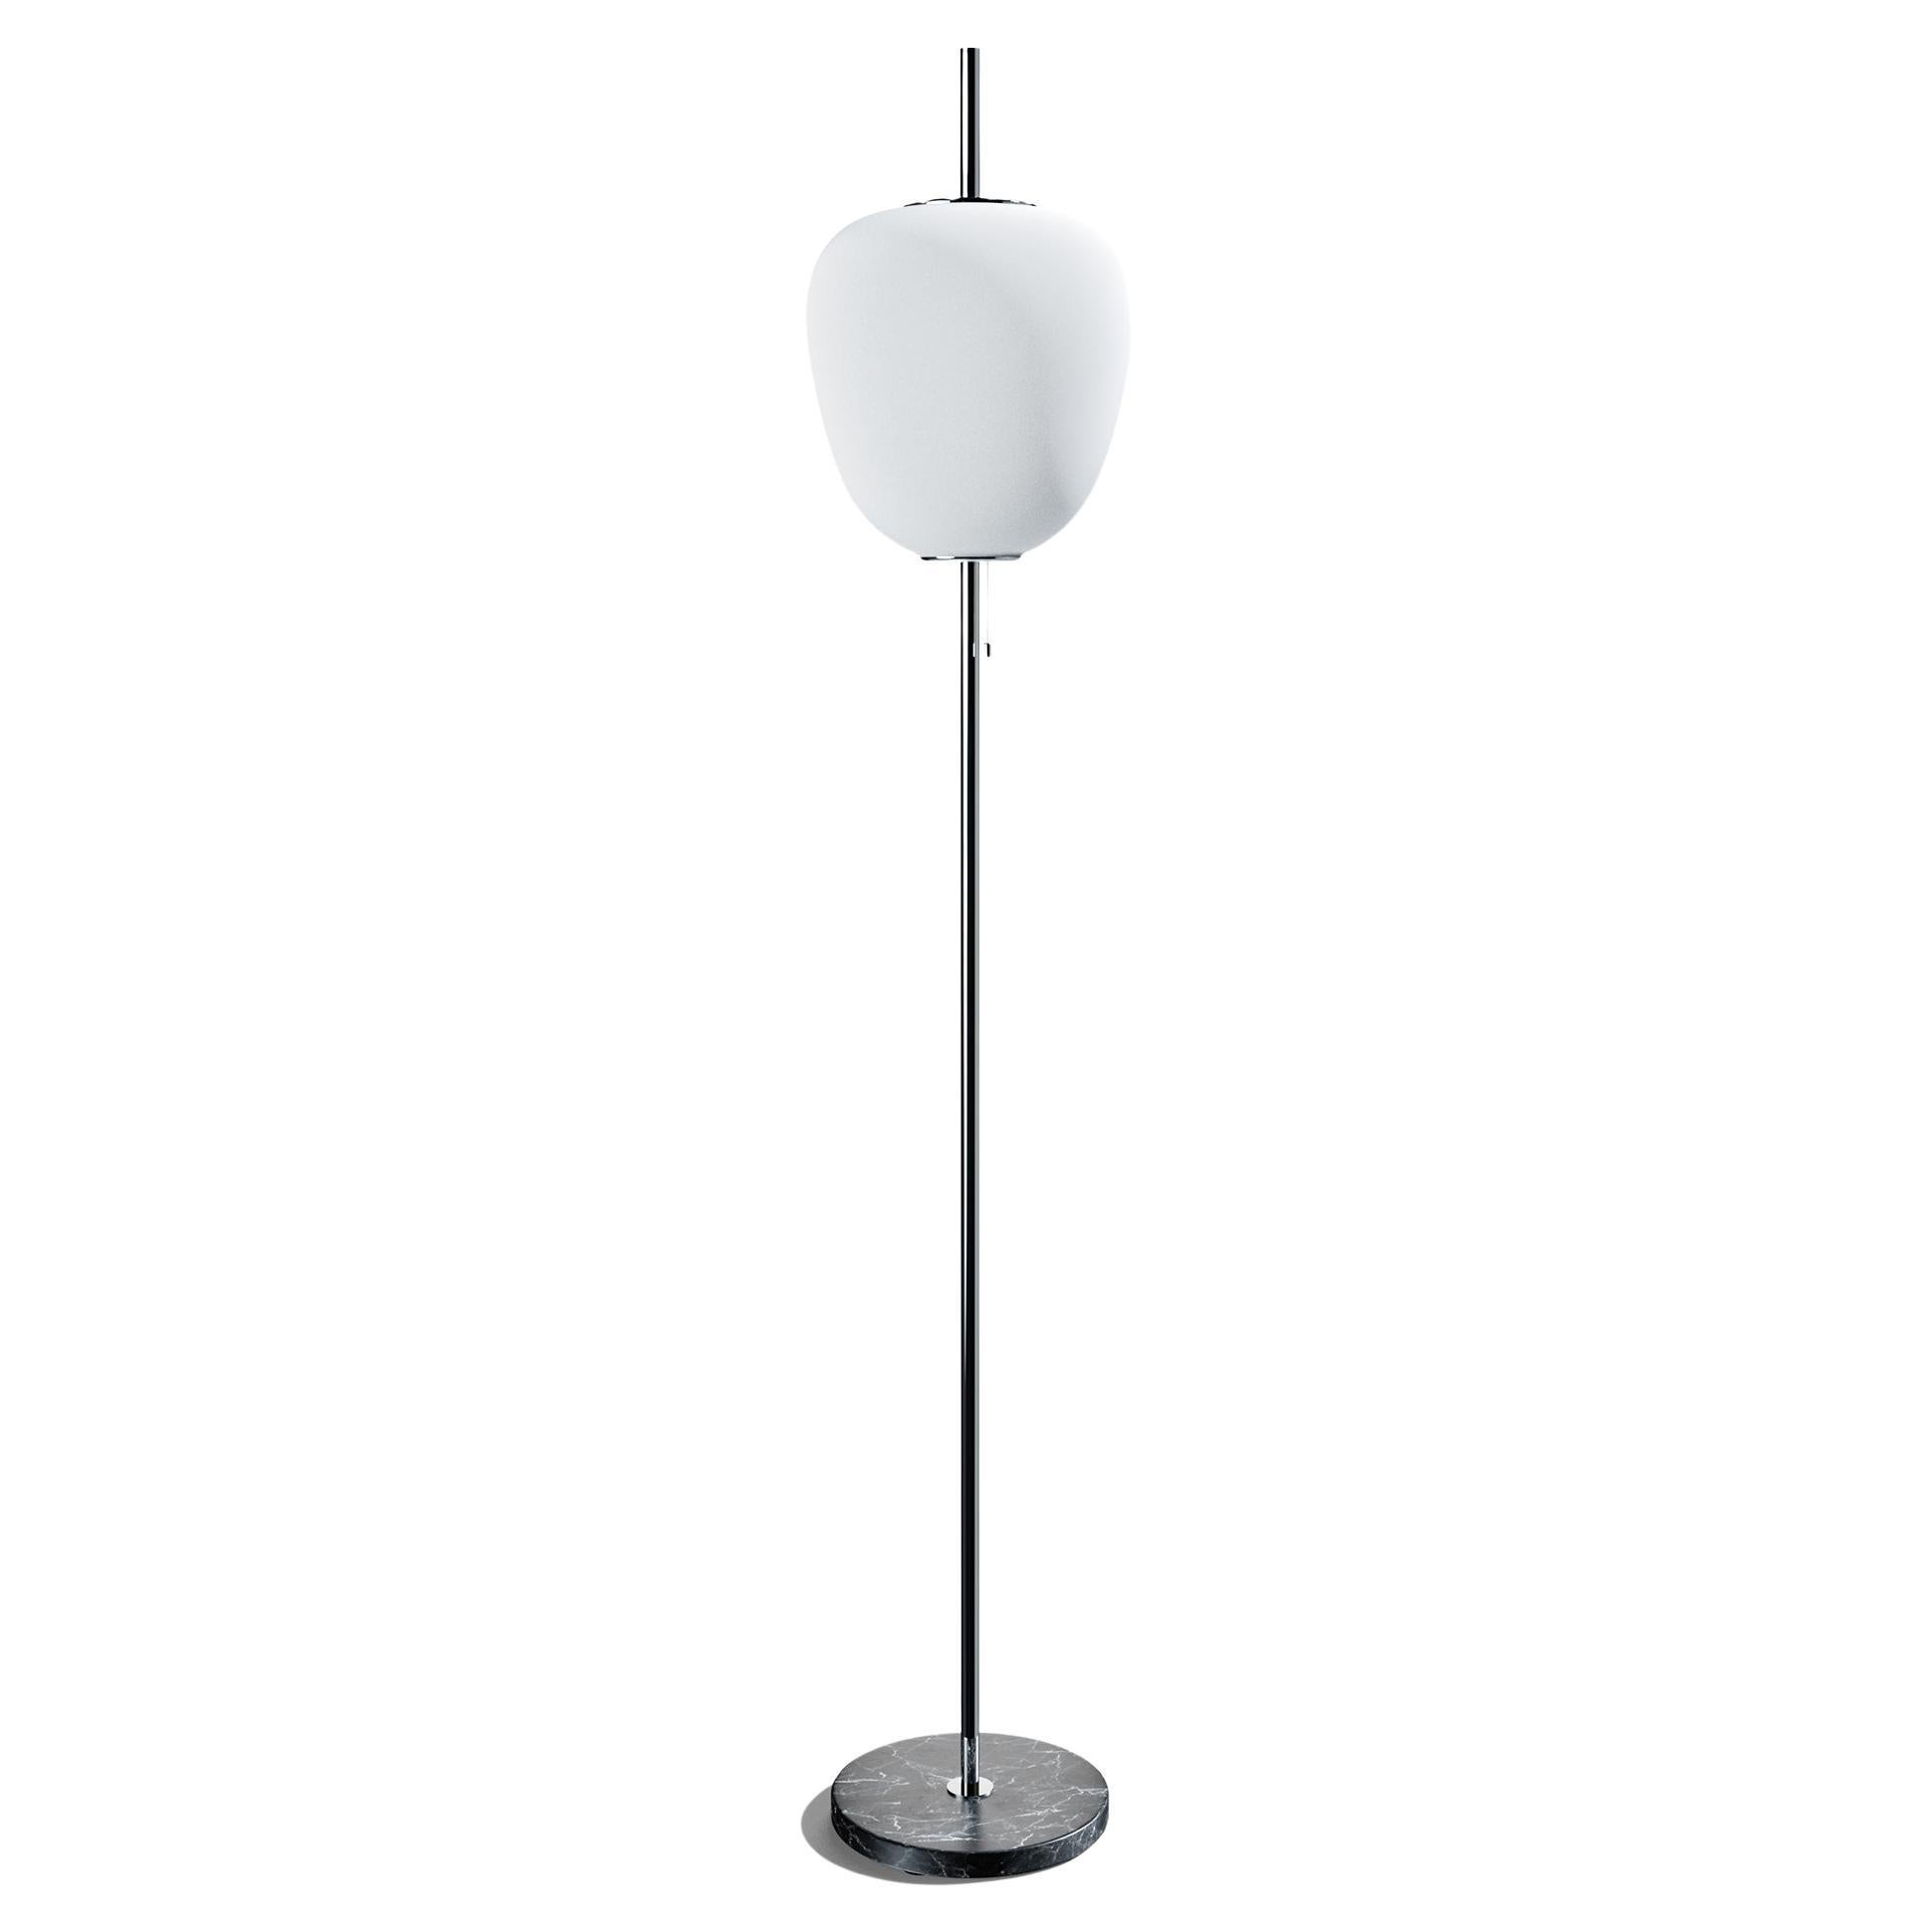 Chrome J14 Tall Floor Lamp by Disderot